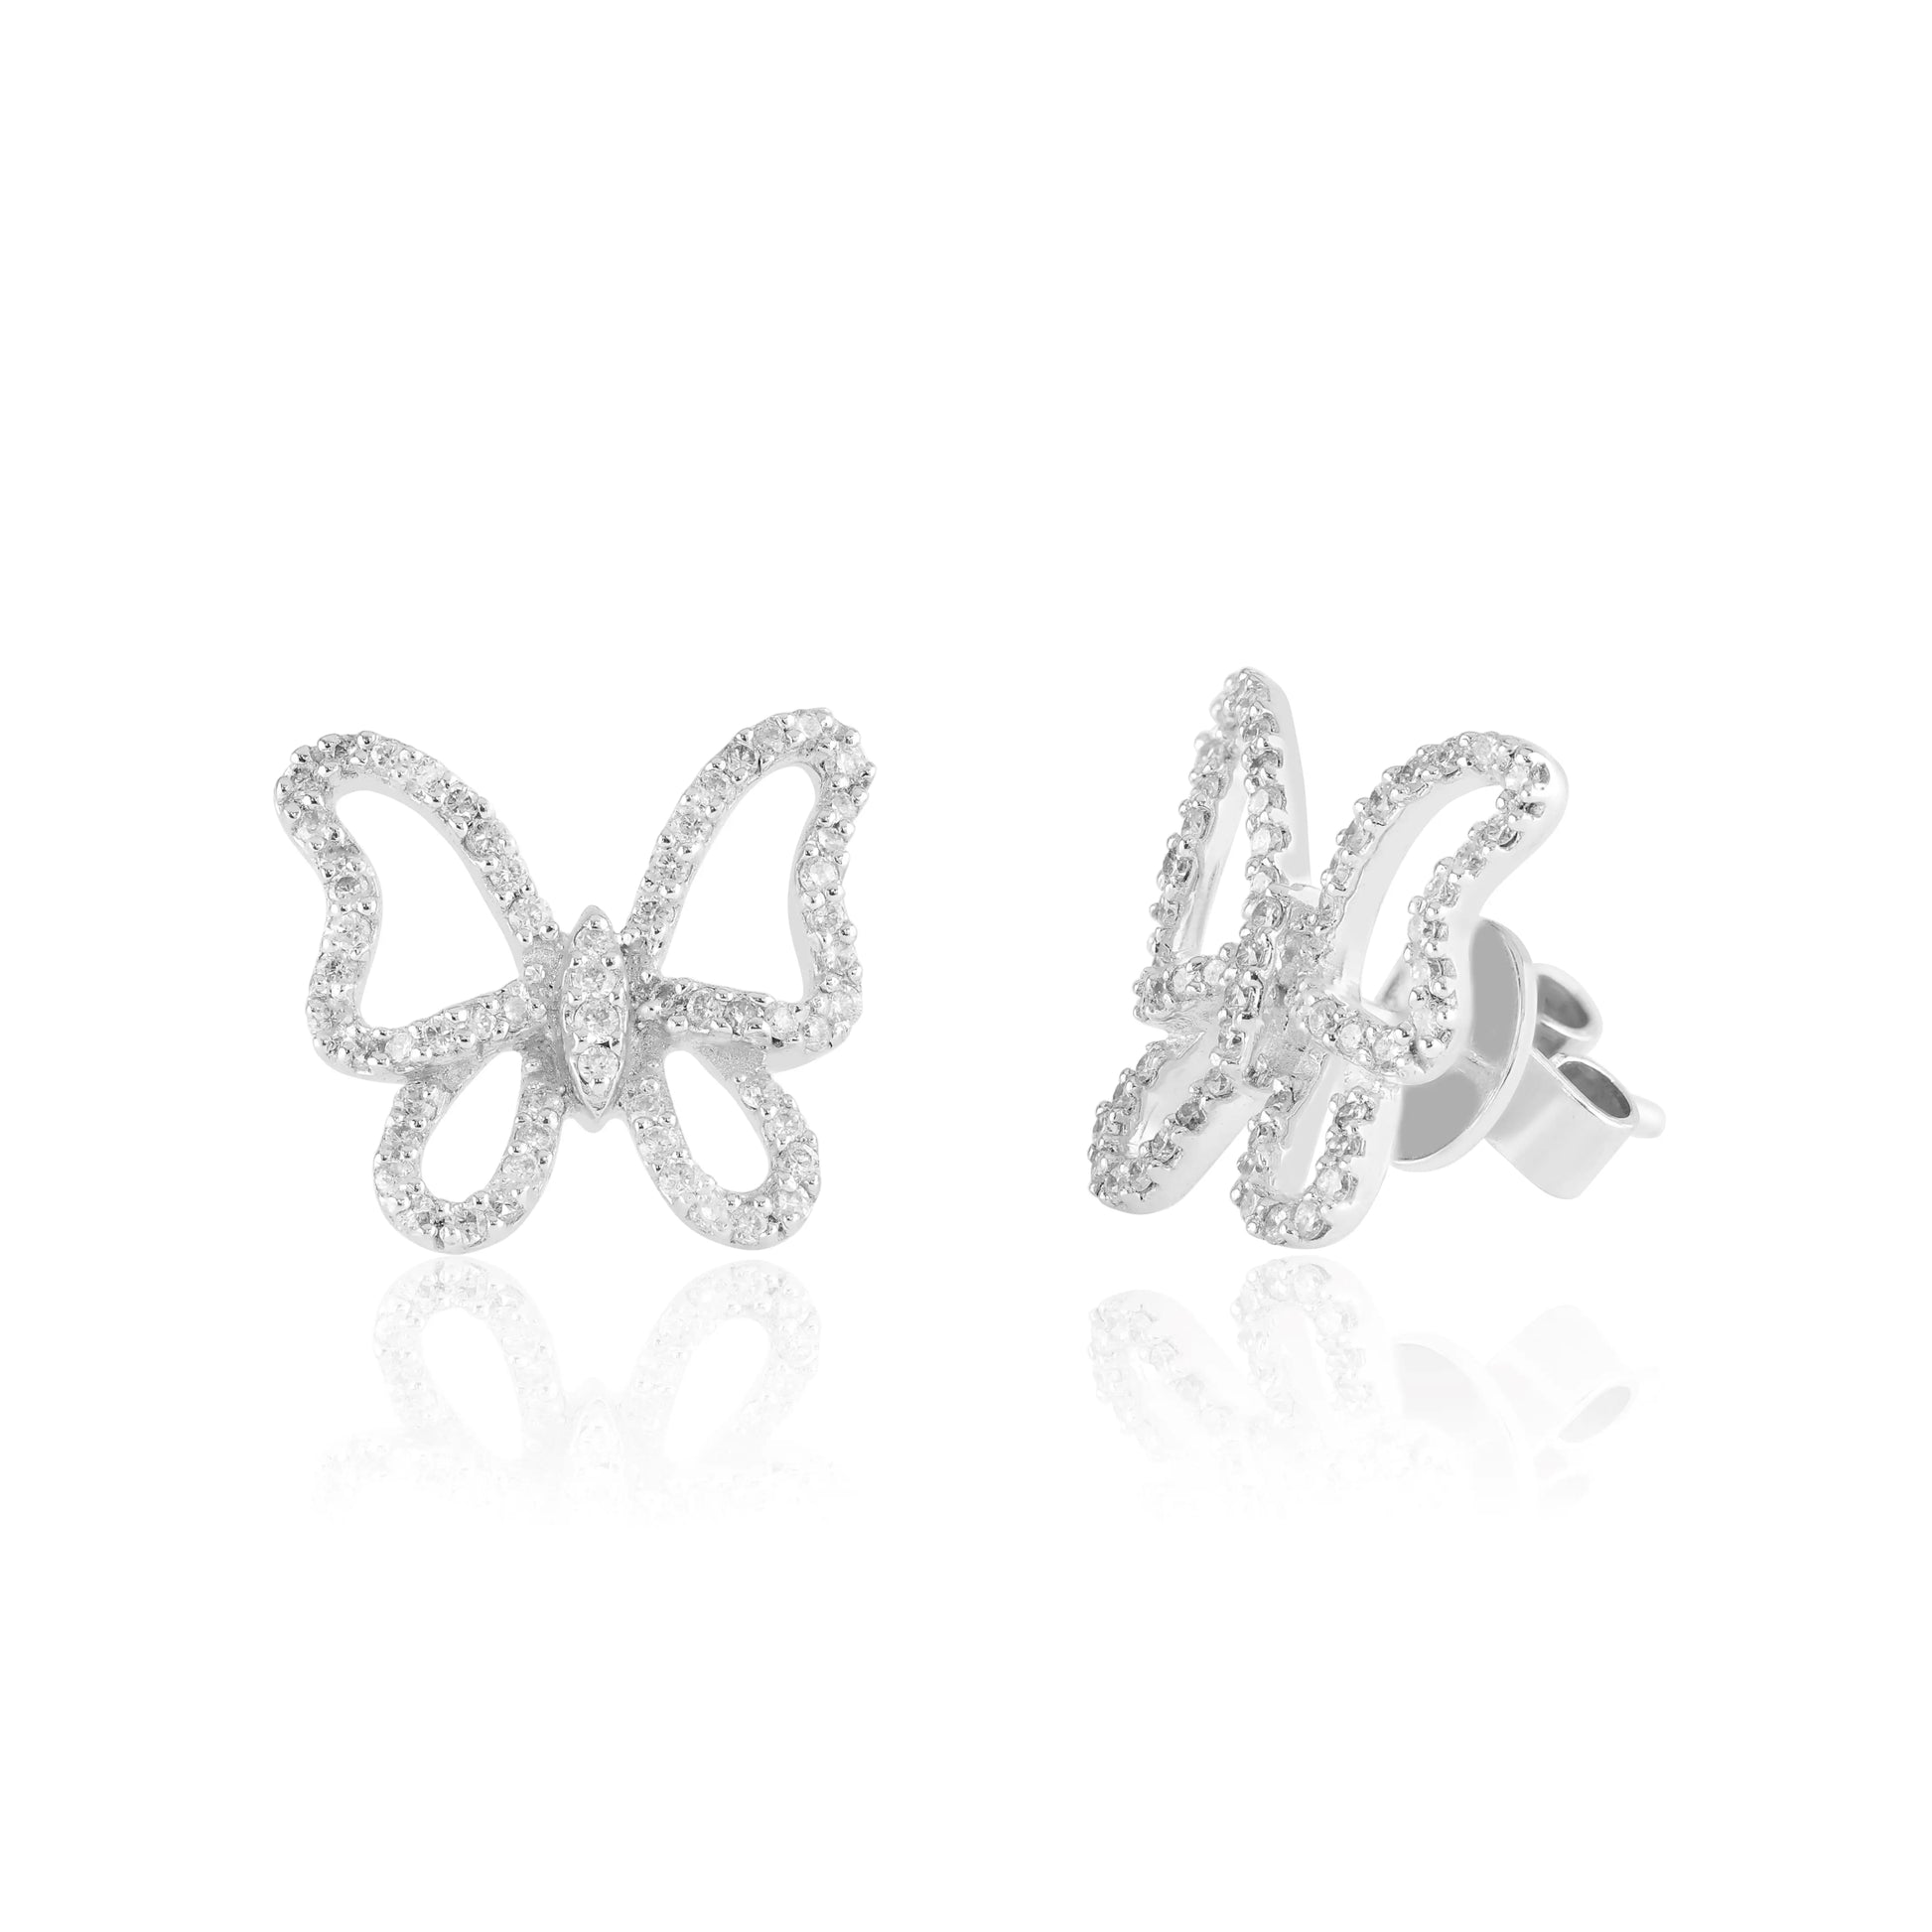 White Gold Earrings Butterfly Diamond Stud Earrings dansonjewelers Danson Jewelers 